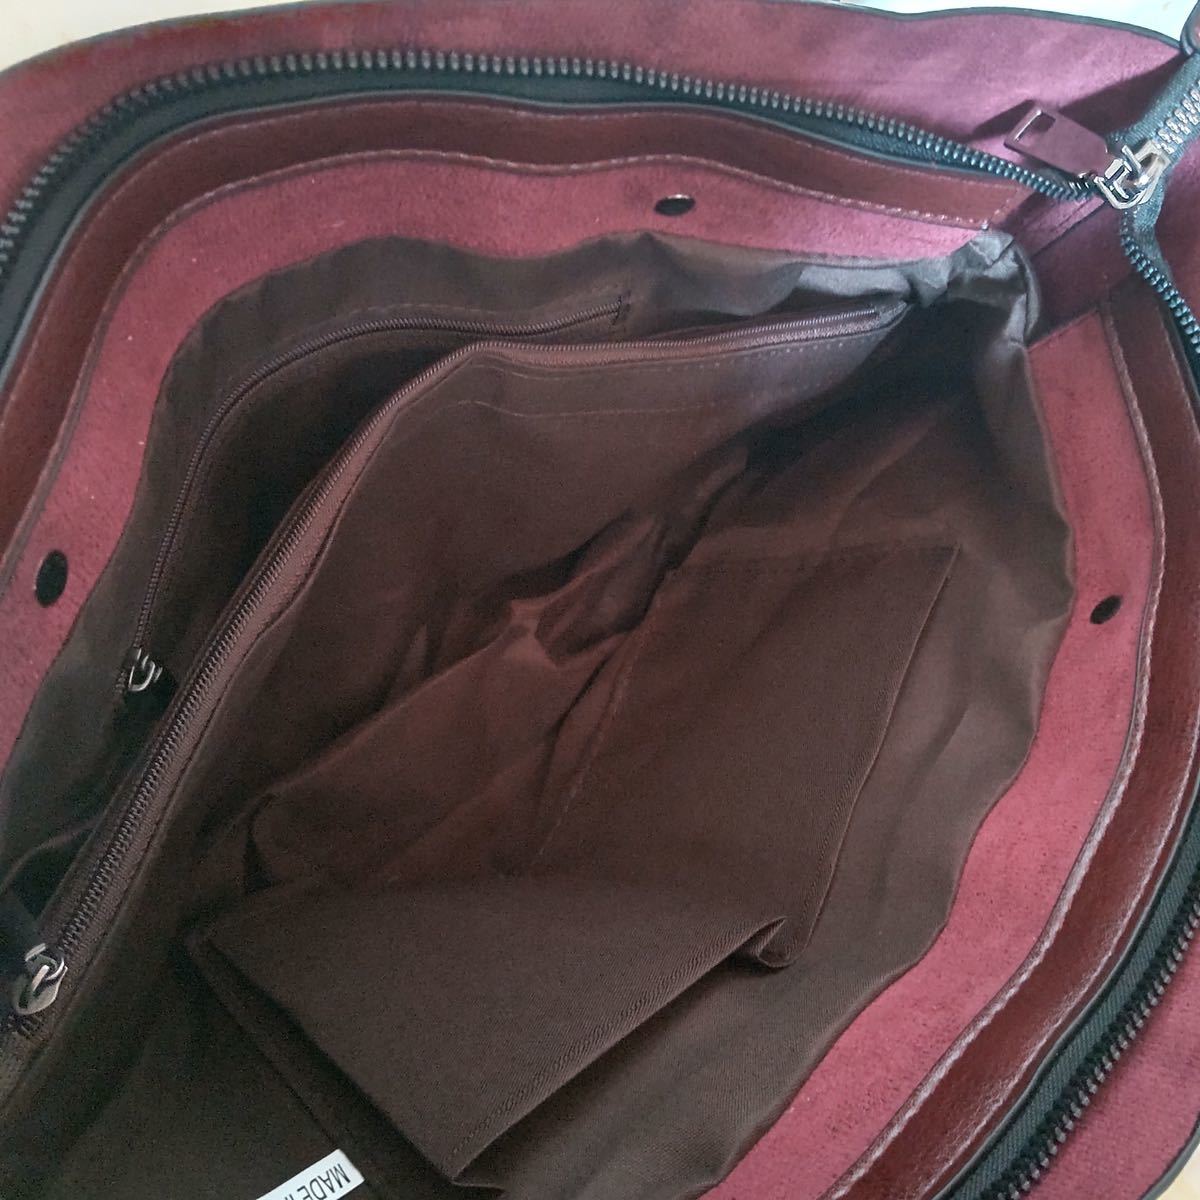 レディース トートバッグ ショルダーバッグ 2way シンプル 新品 韓国 鞄 大容量 マザーズバッグ A4 ビジネスバッグ 通学 無地 ハンドバッグ